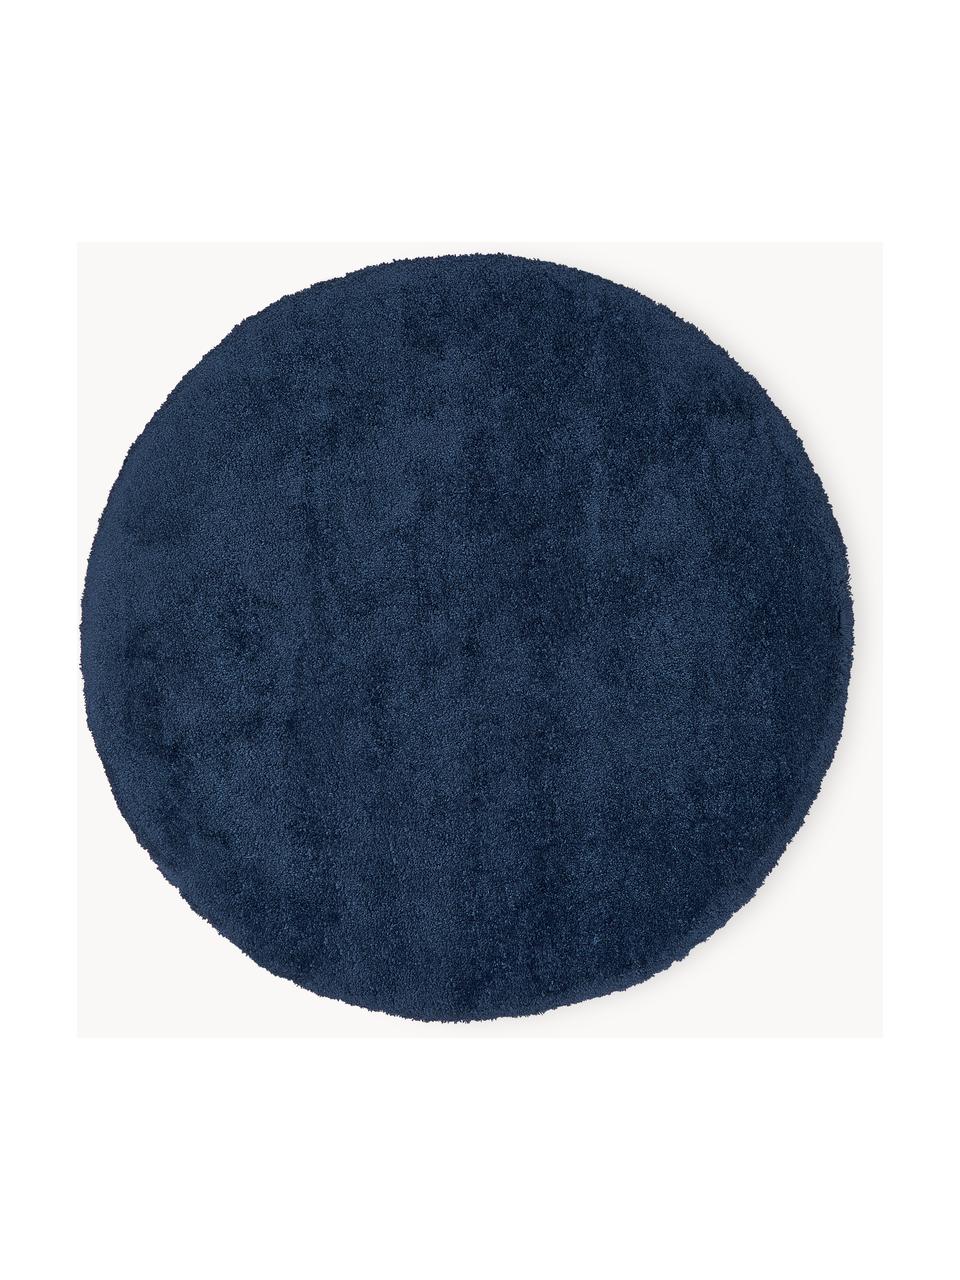 Tapis rond moelleux à poils longs Leighton, Bleu foncé, Ø 120 cm (taille S)